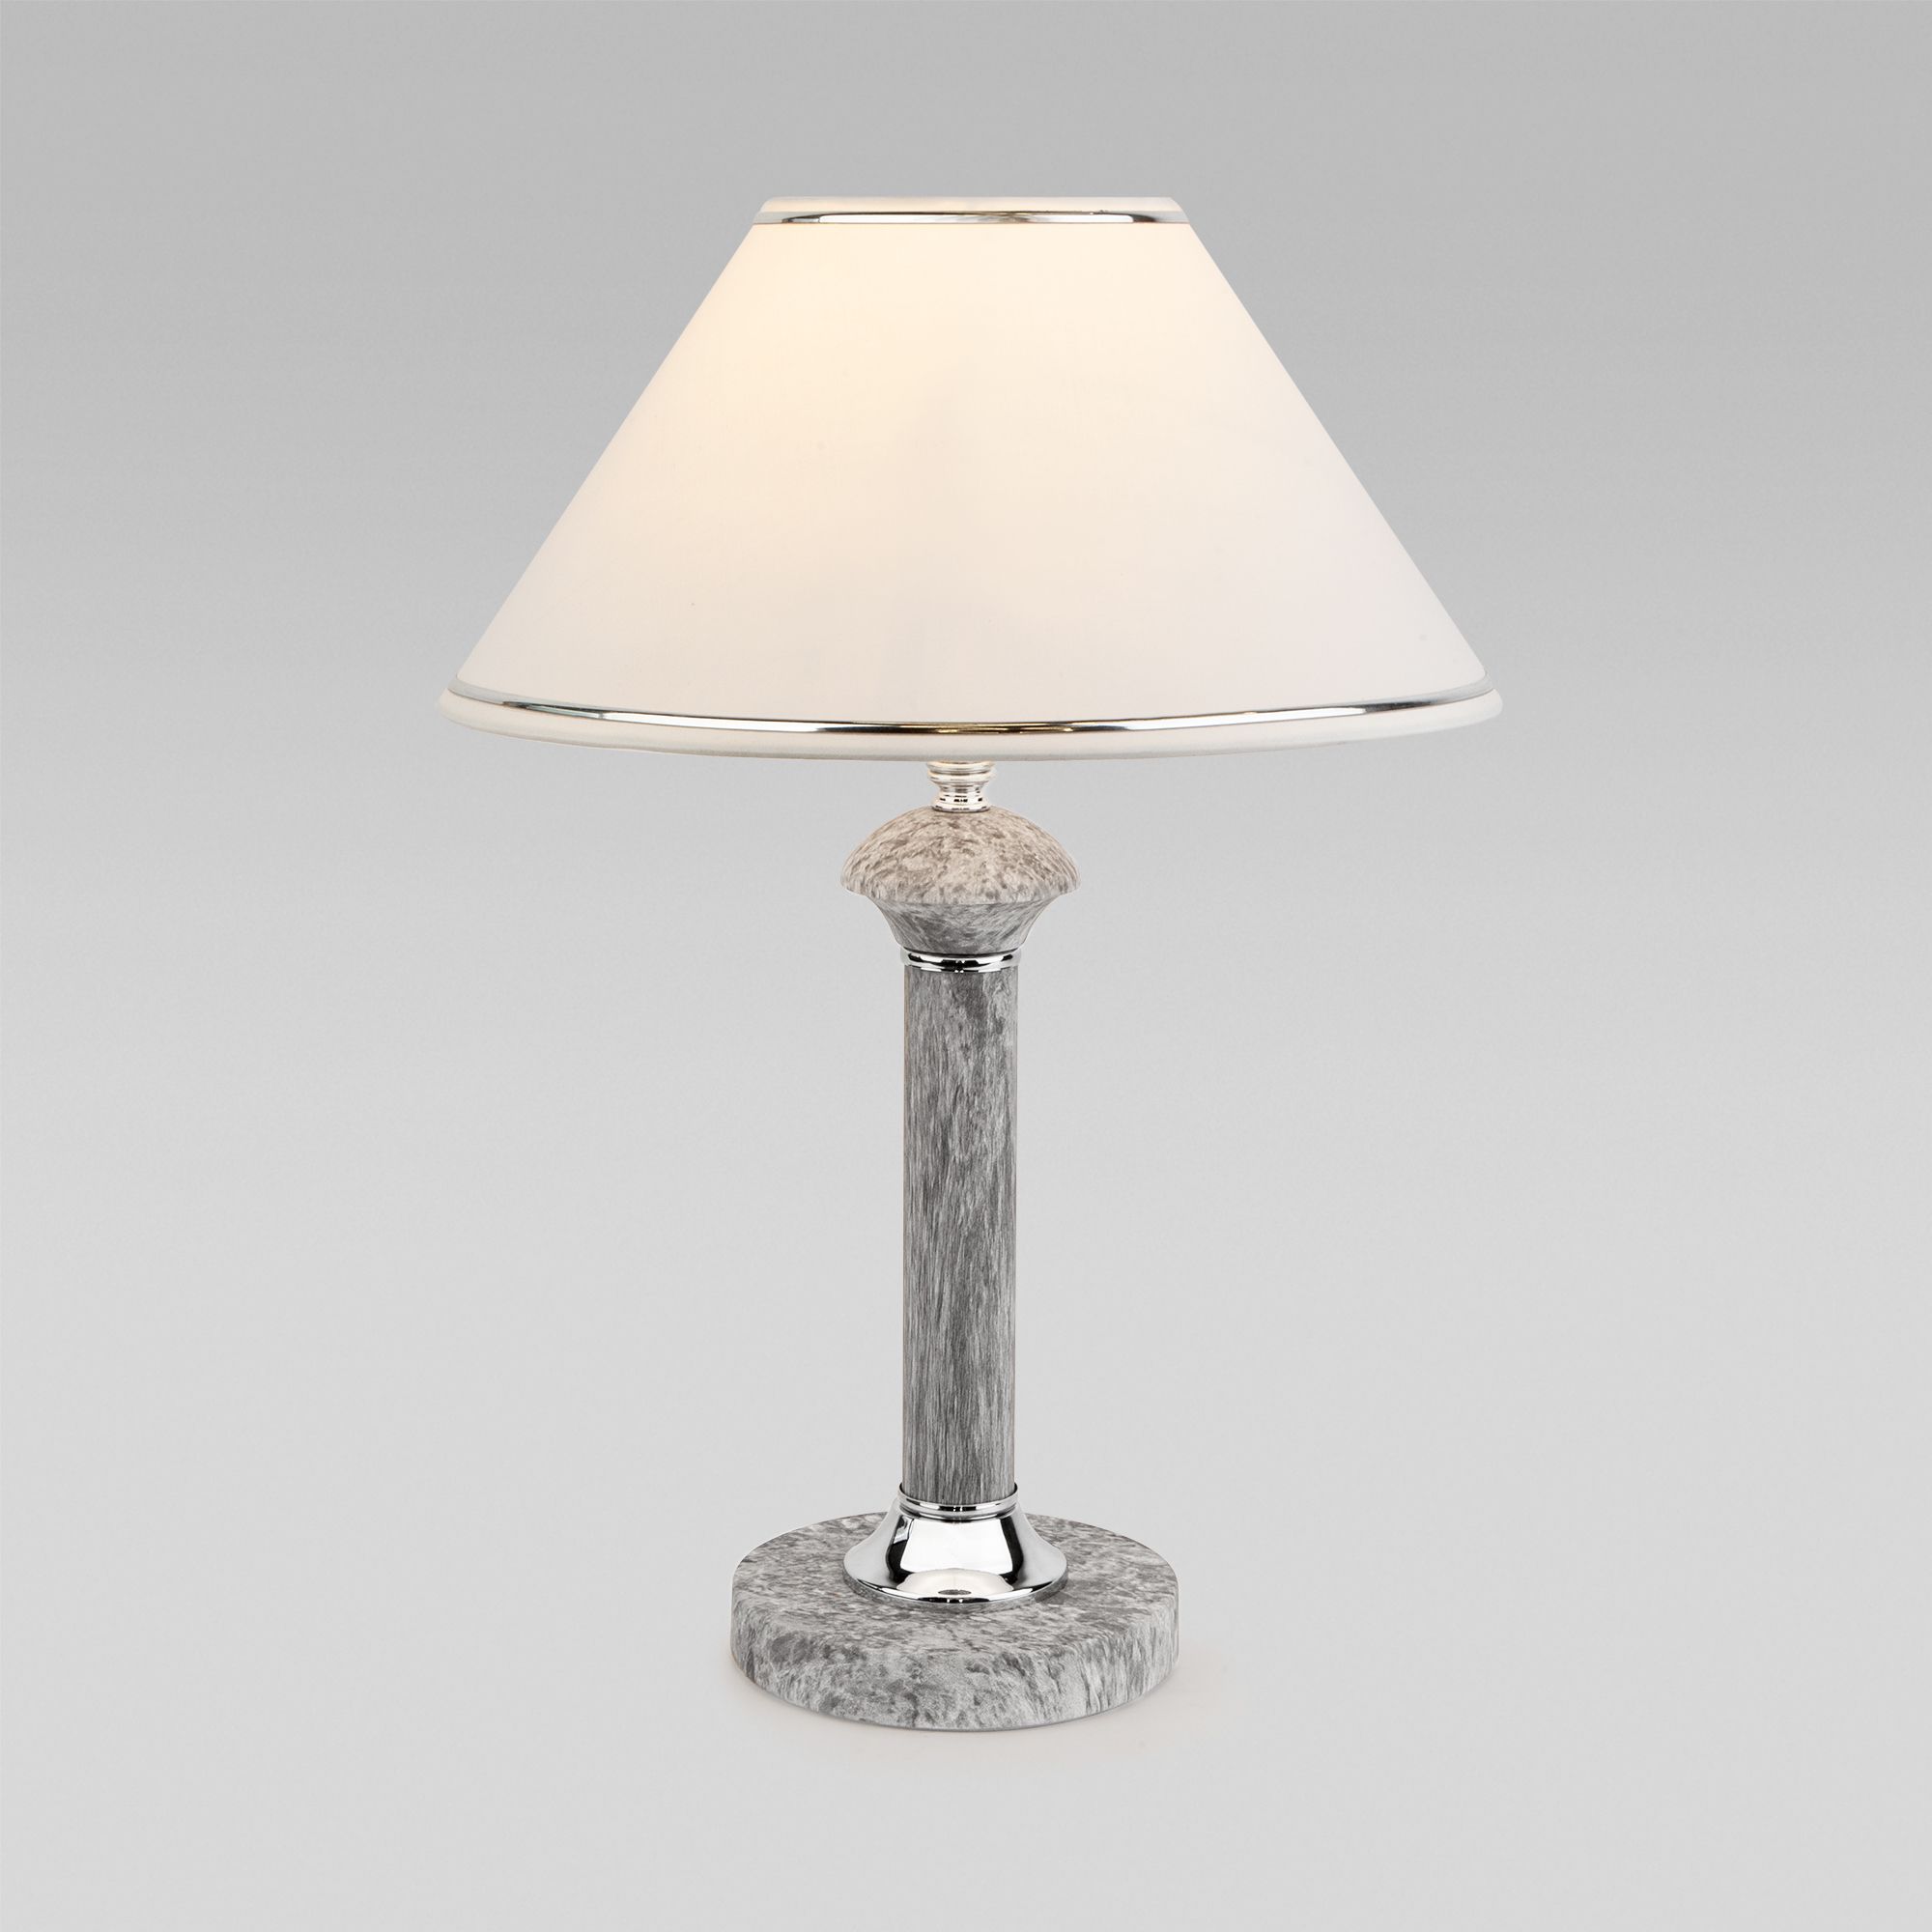 Настольный светильник с тканевым абажуром Eurosvet Lorenzo 60019/1 мрамор. Фото 1